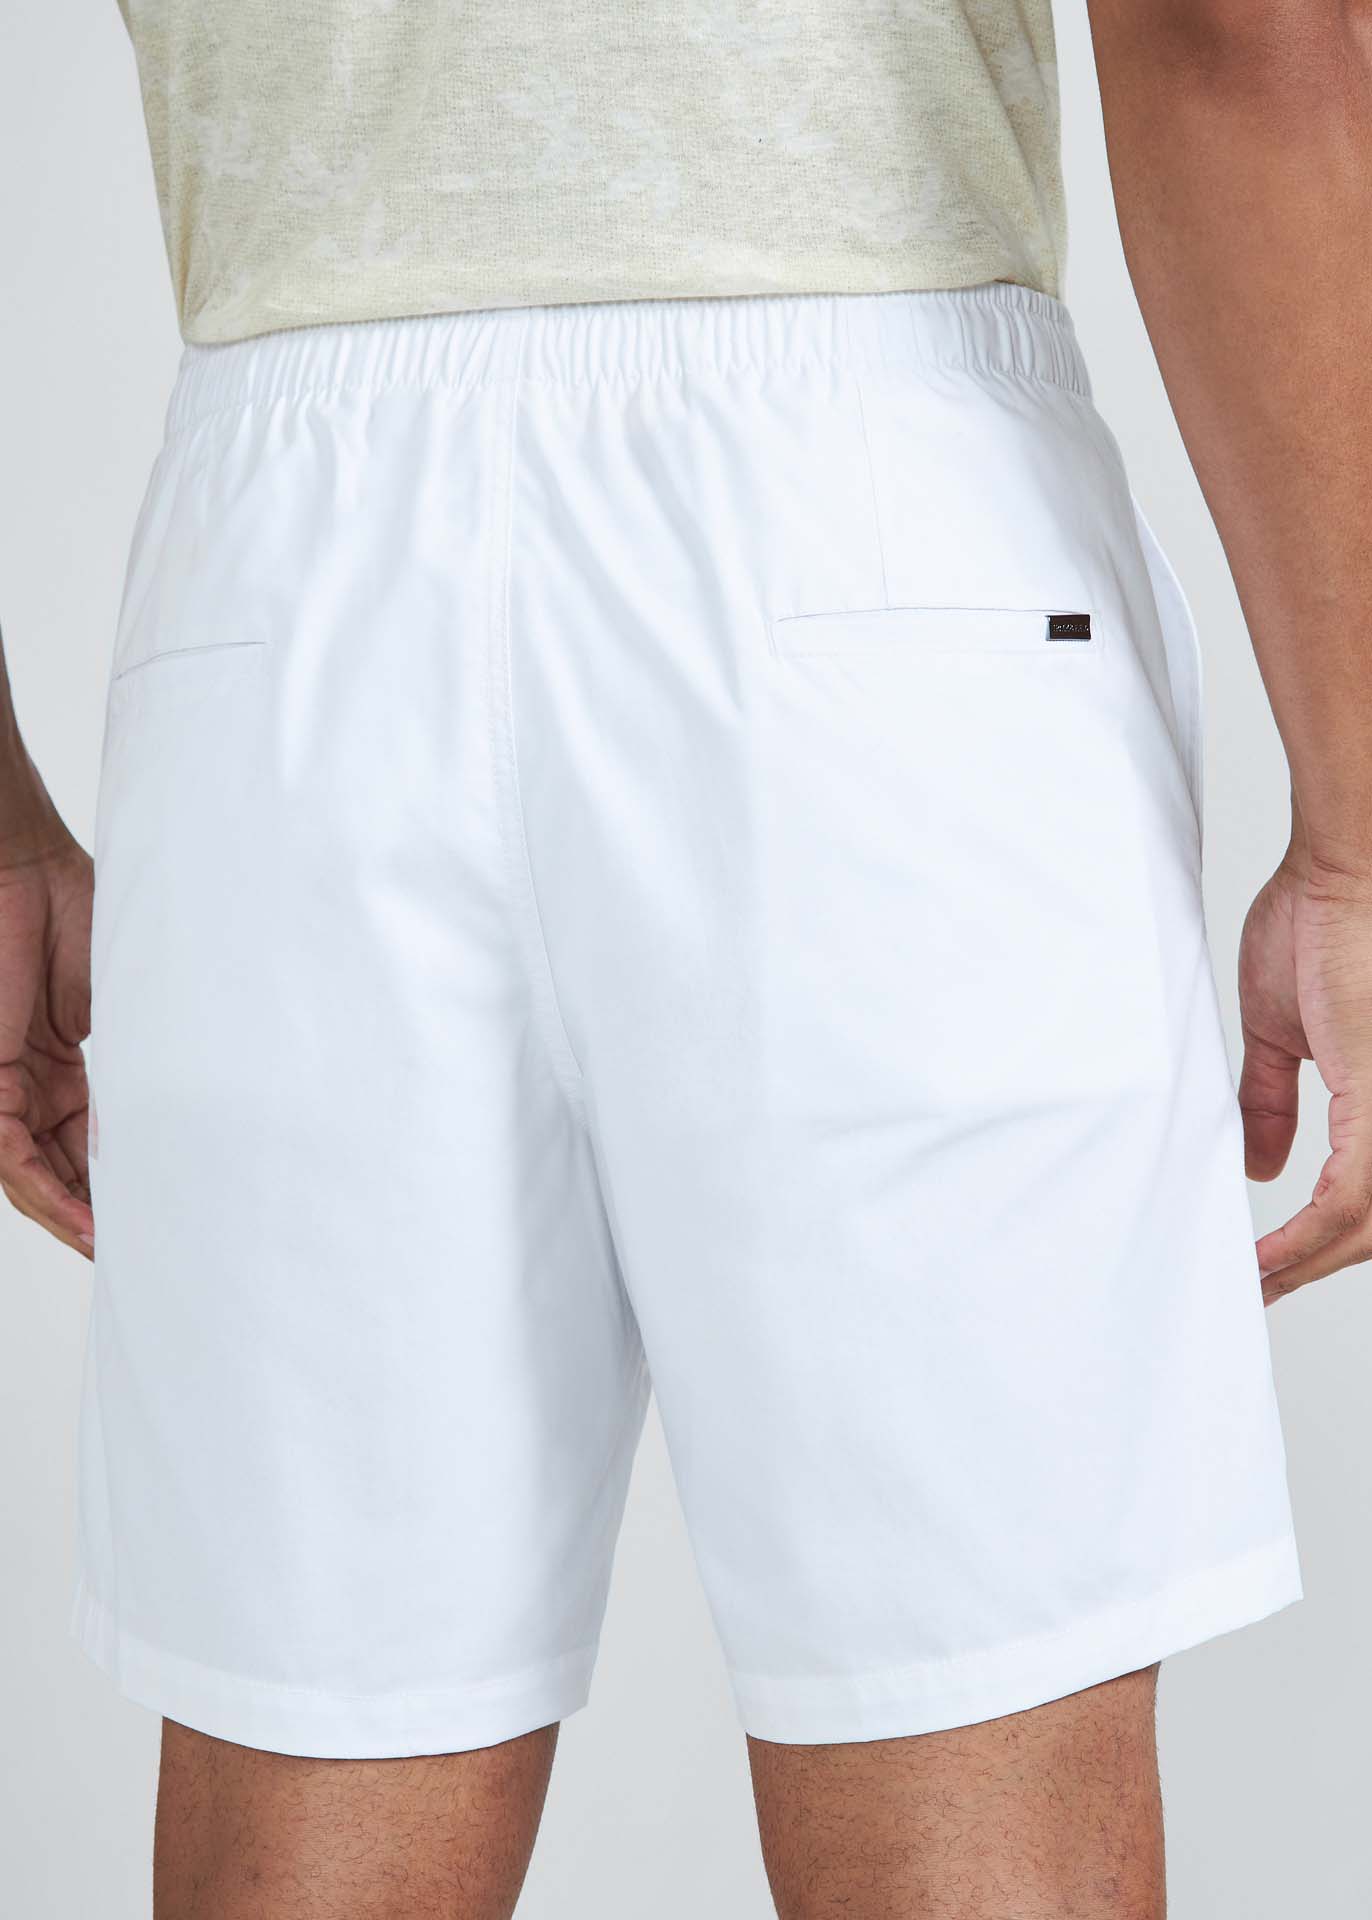 COMPLEXO FLUXO WHITELIST part1 #shorts 